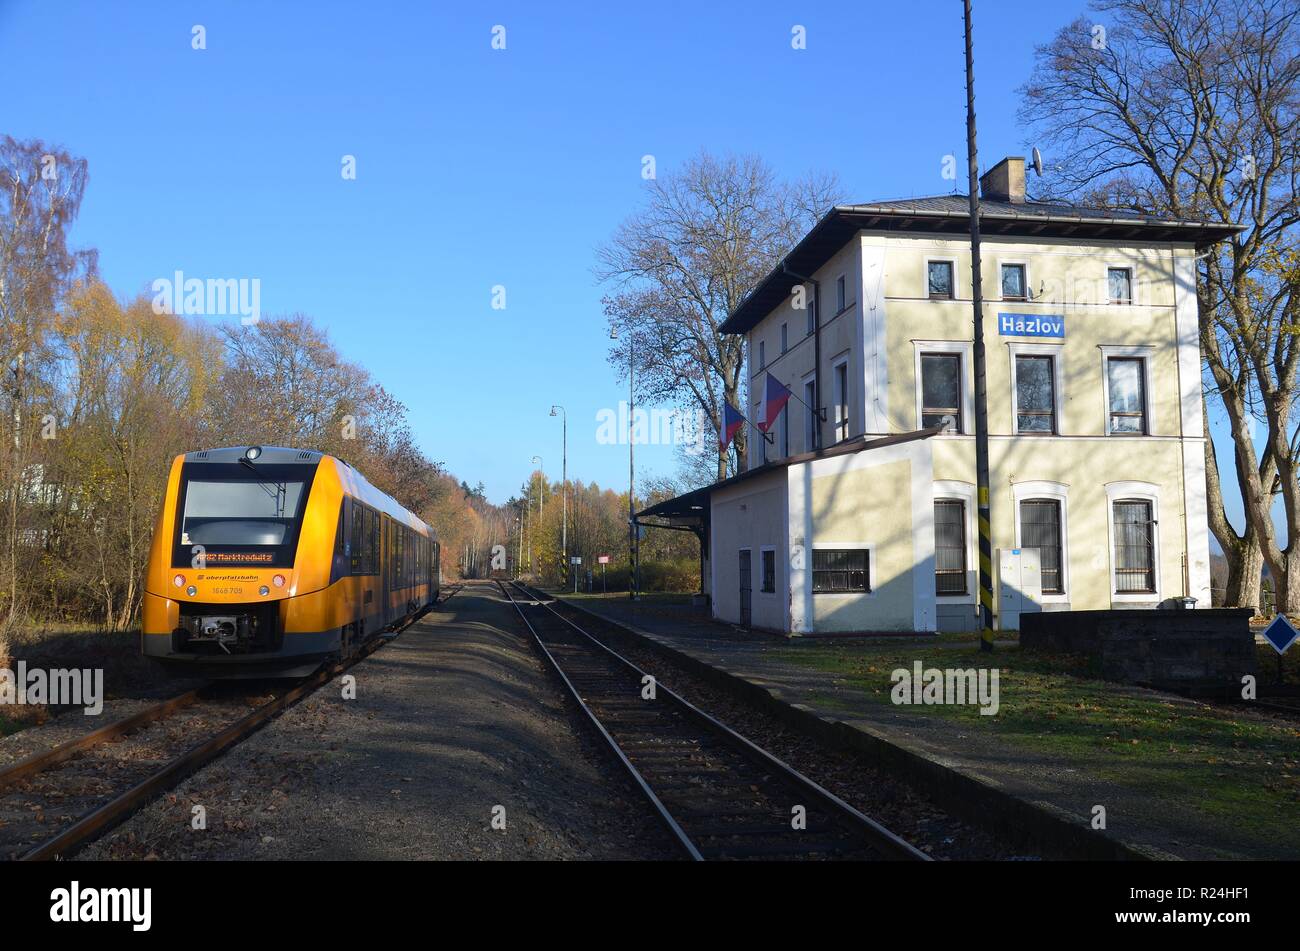 Hazlov (Haslau) in Westböhmen, Tschechische Republik. Herbststimmung am Bahnhof. Zug der Oberpfalzbahn nach Marktredwitz. Foto Stock